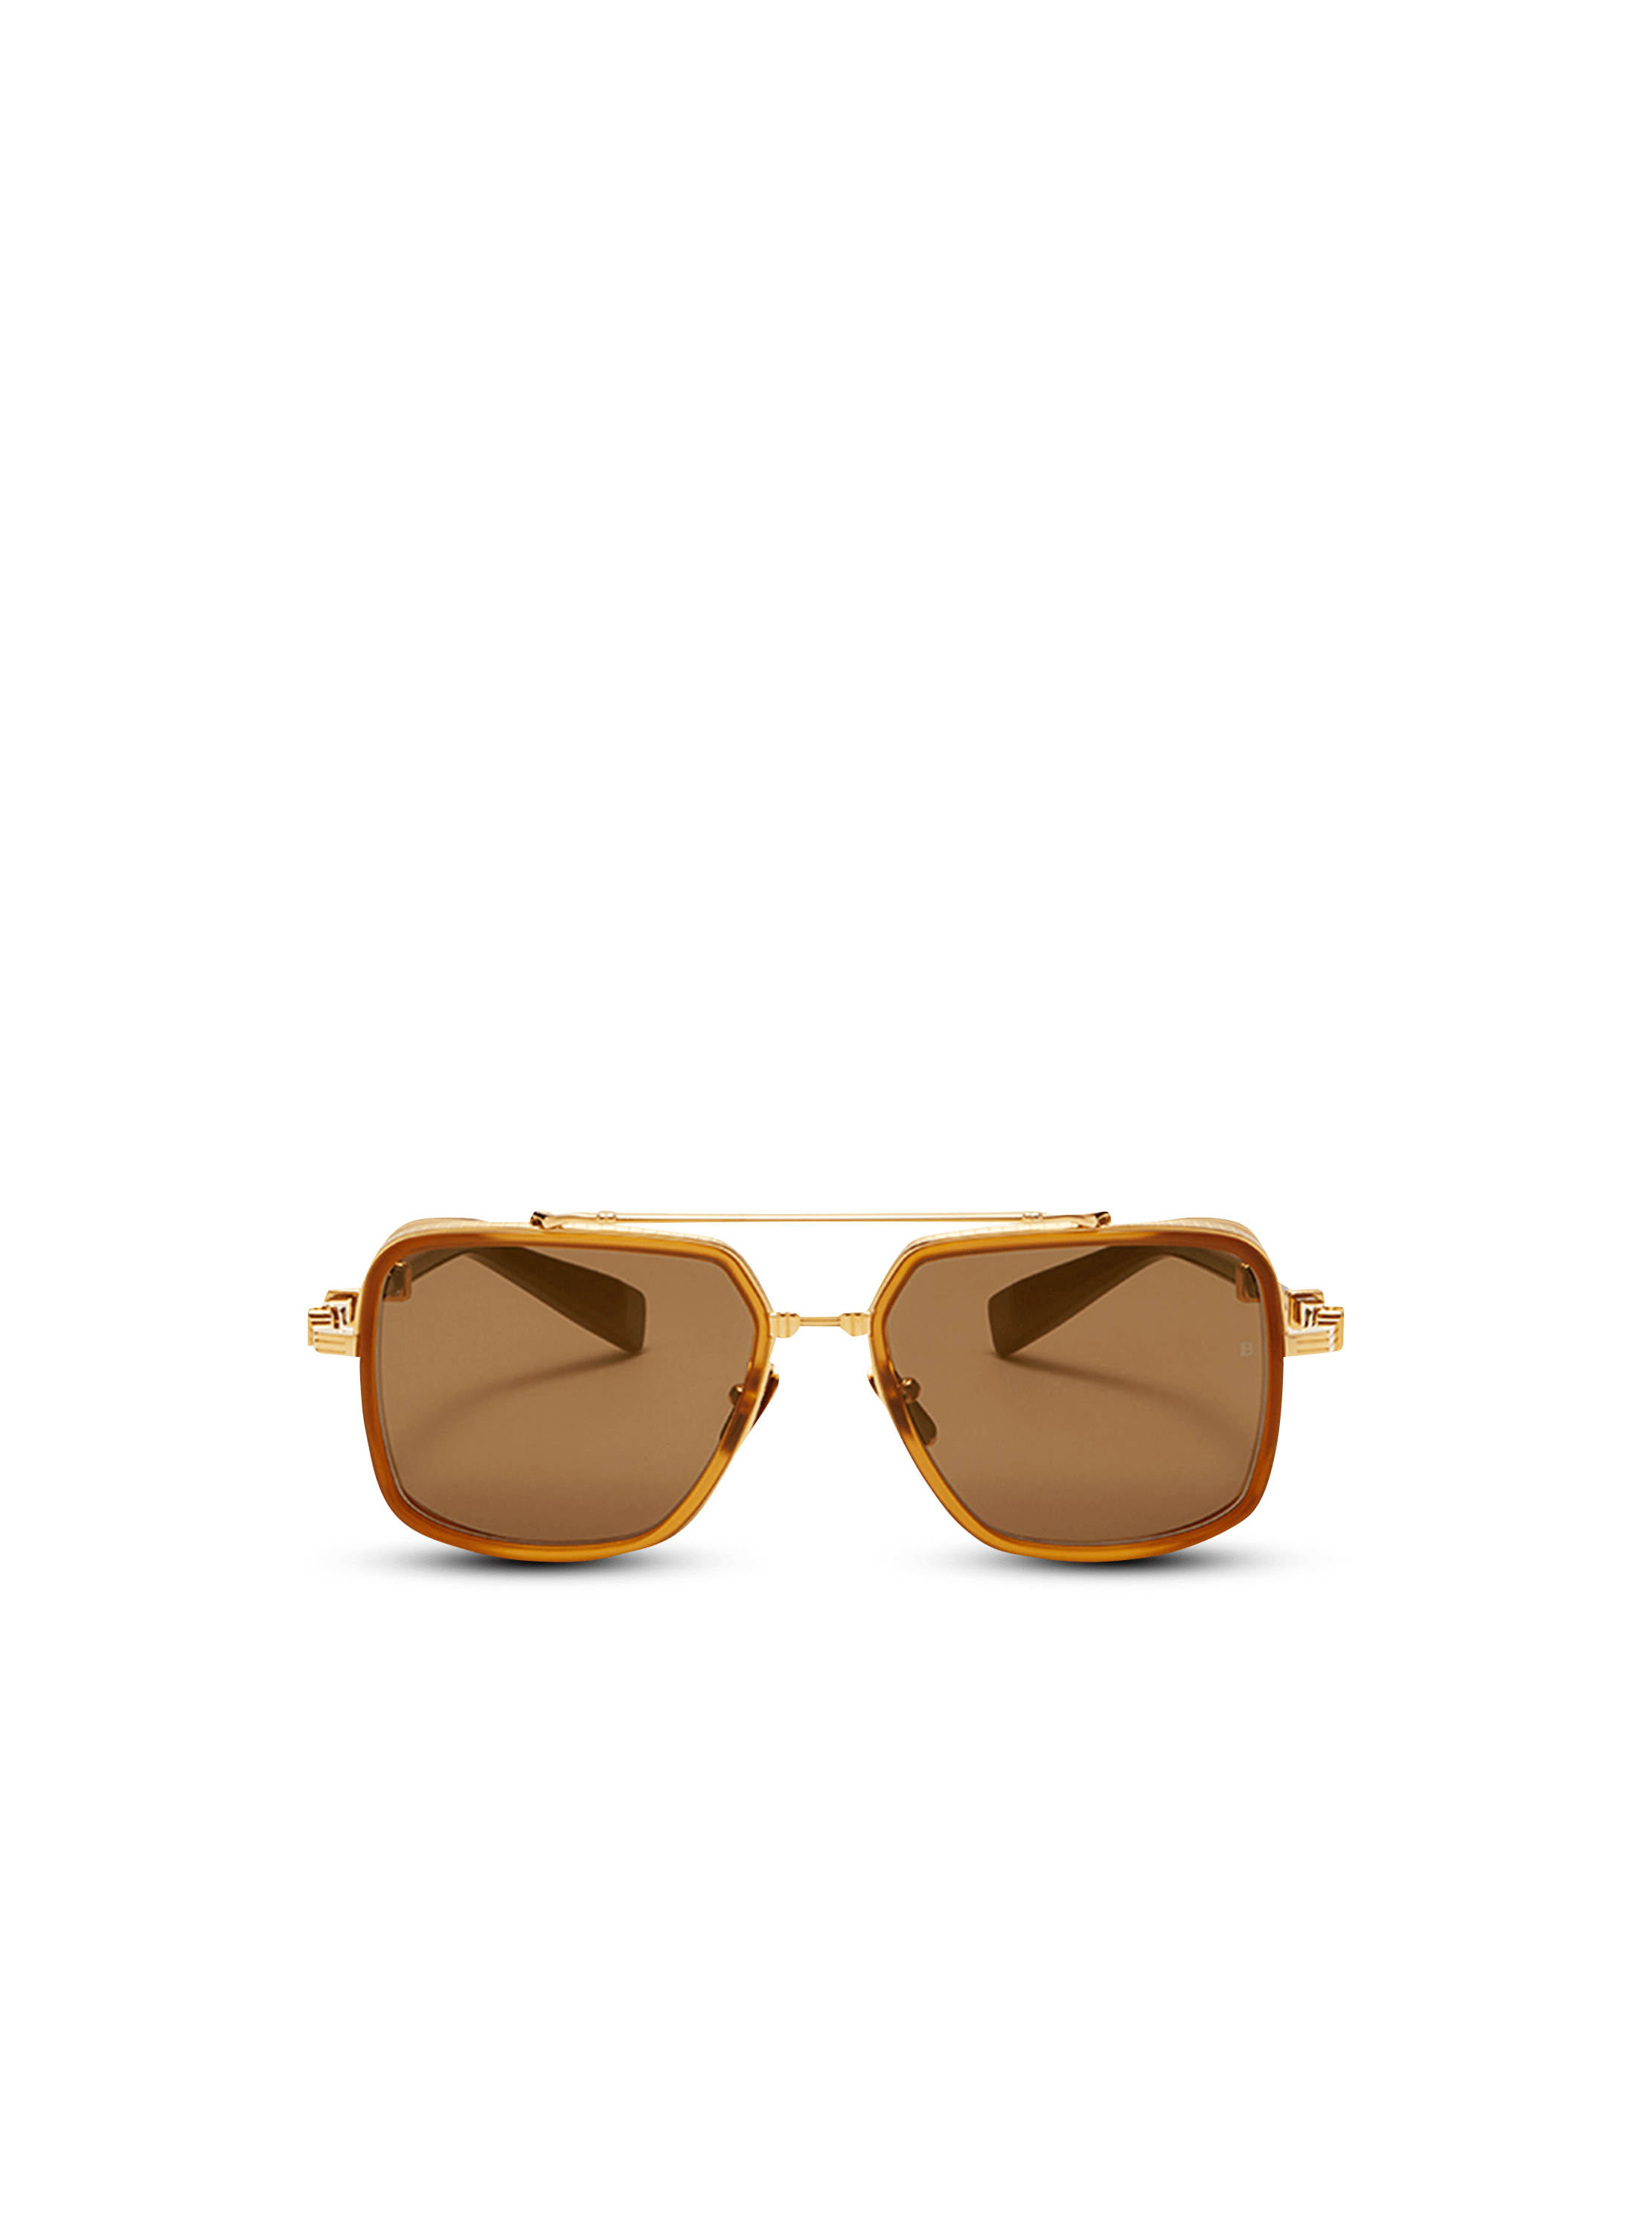 Officier sunglasses